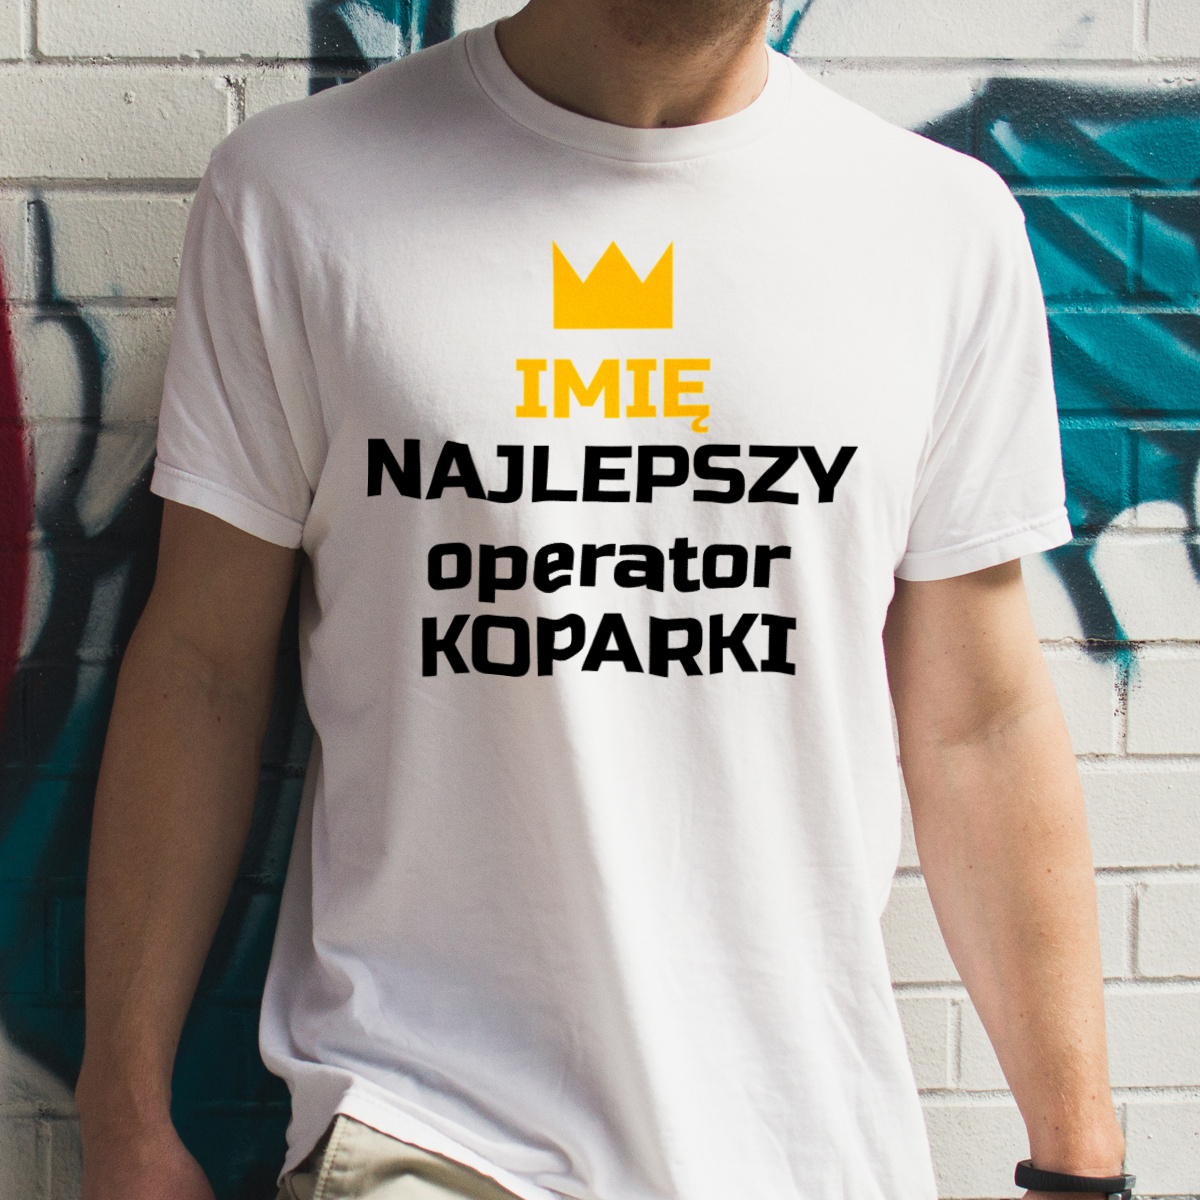 Twoje Imię Najlepszy Operator Koparki - Męska Koszulka Biała